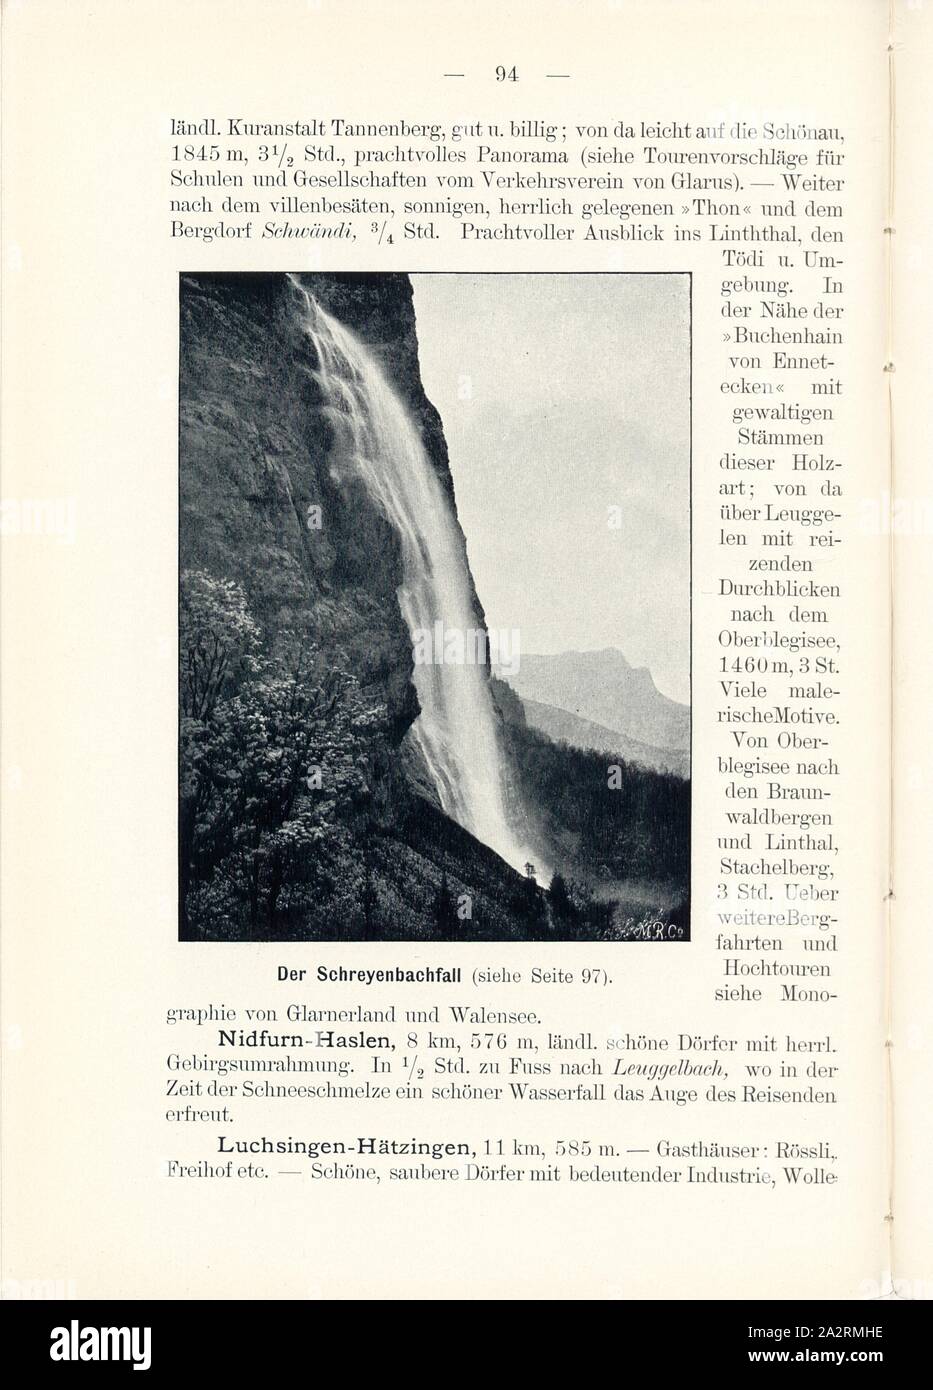 The Schreyenbach Falls, Schreyenbach Falls in the Canton of Glarus, Signed: M.R.C, Fig. 96, p. 94, Meisenbach, Riffarth und Co. (imp.), 1900, J. Knobel: Illustrierter Reisebegleiter für die Alpenstrasse des Klausen und ihre Zufahrtslinien. Glarus: Buchdruckerei J. Spälti, 1900 Stock Photo